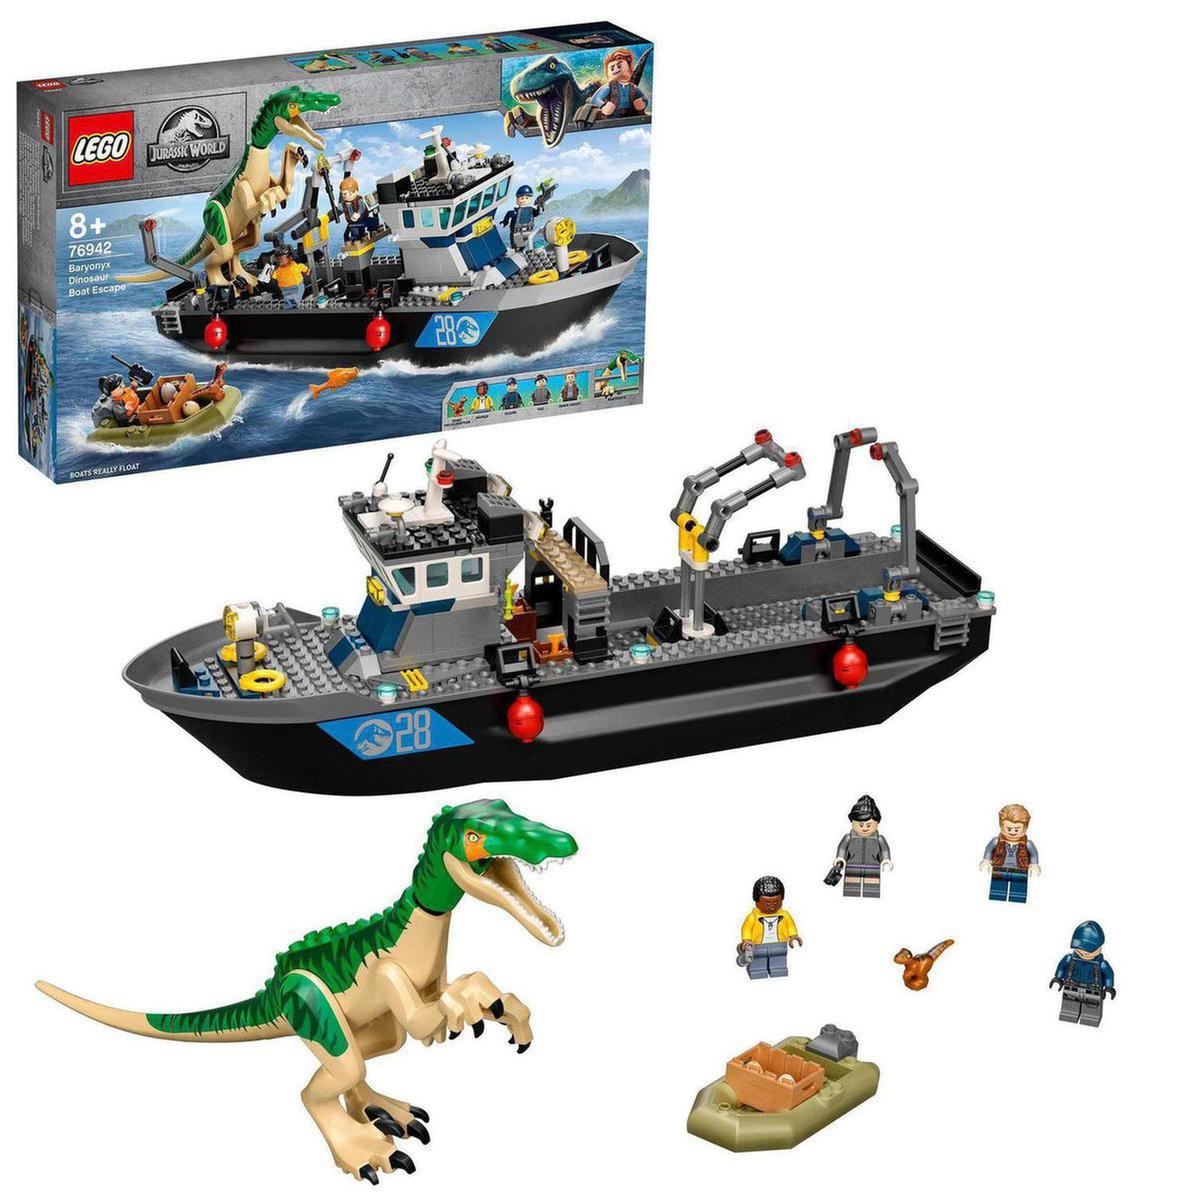 Jogo Ps3 Dinossauro De Lego: comprar mais barato no Submarino